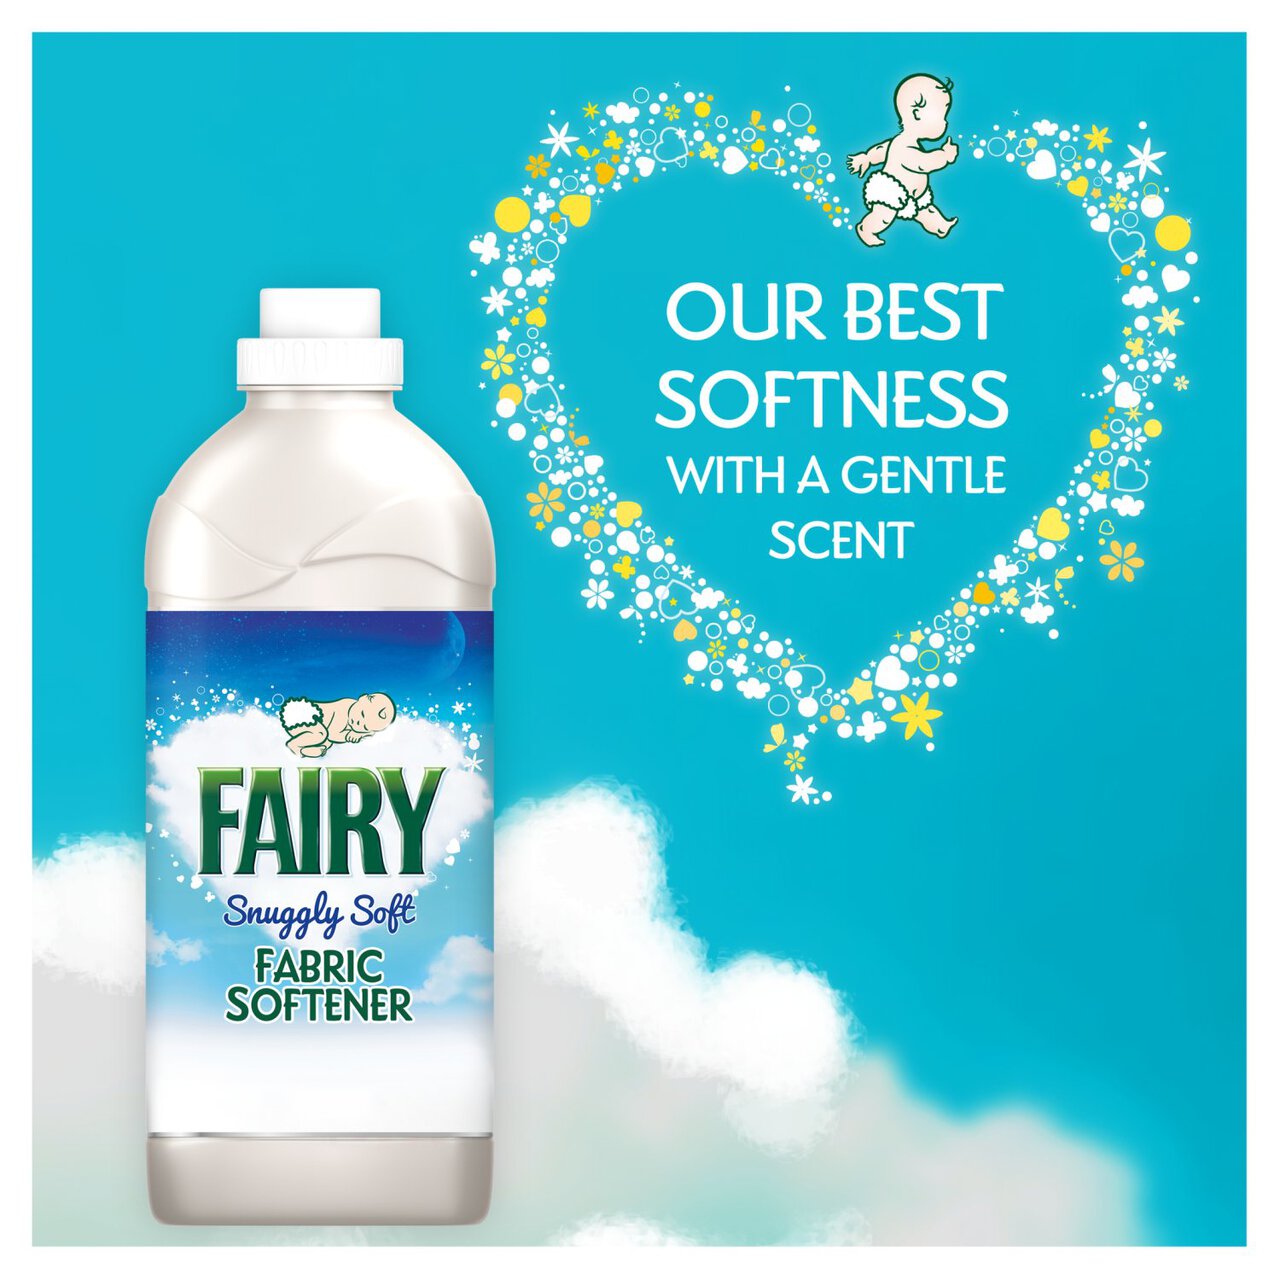 Fairy Fabric Conditioner for Sensitive Skin 52 Washes by Fairy Non Bio 1.82l